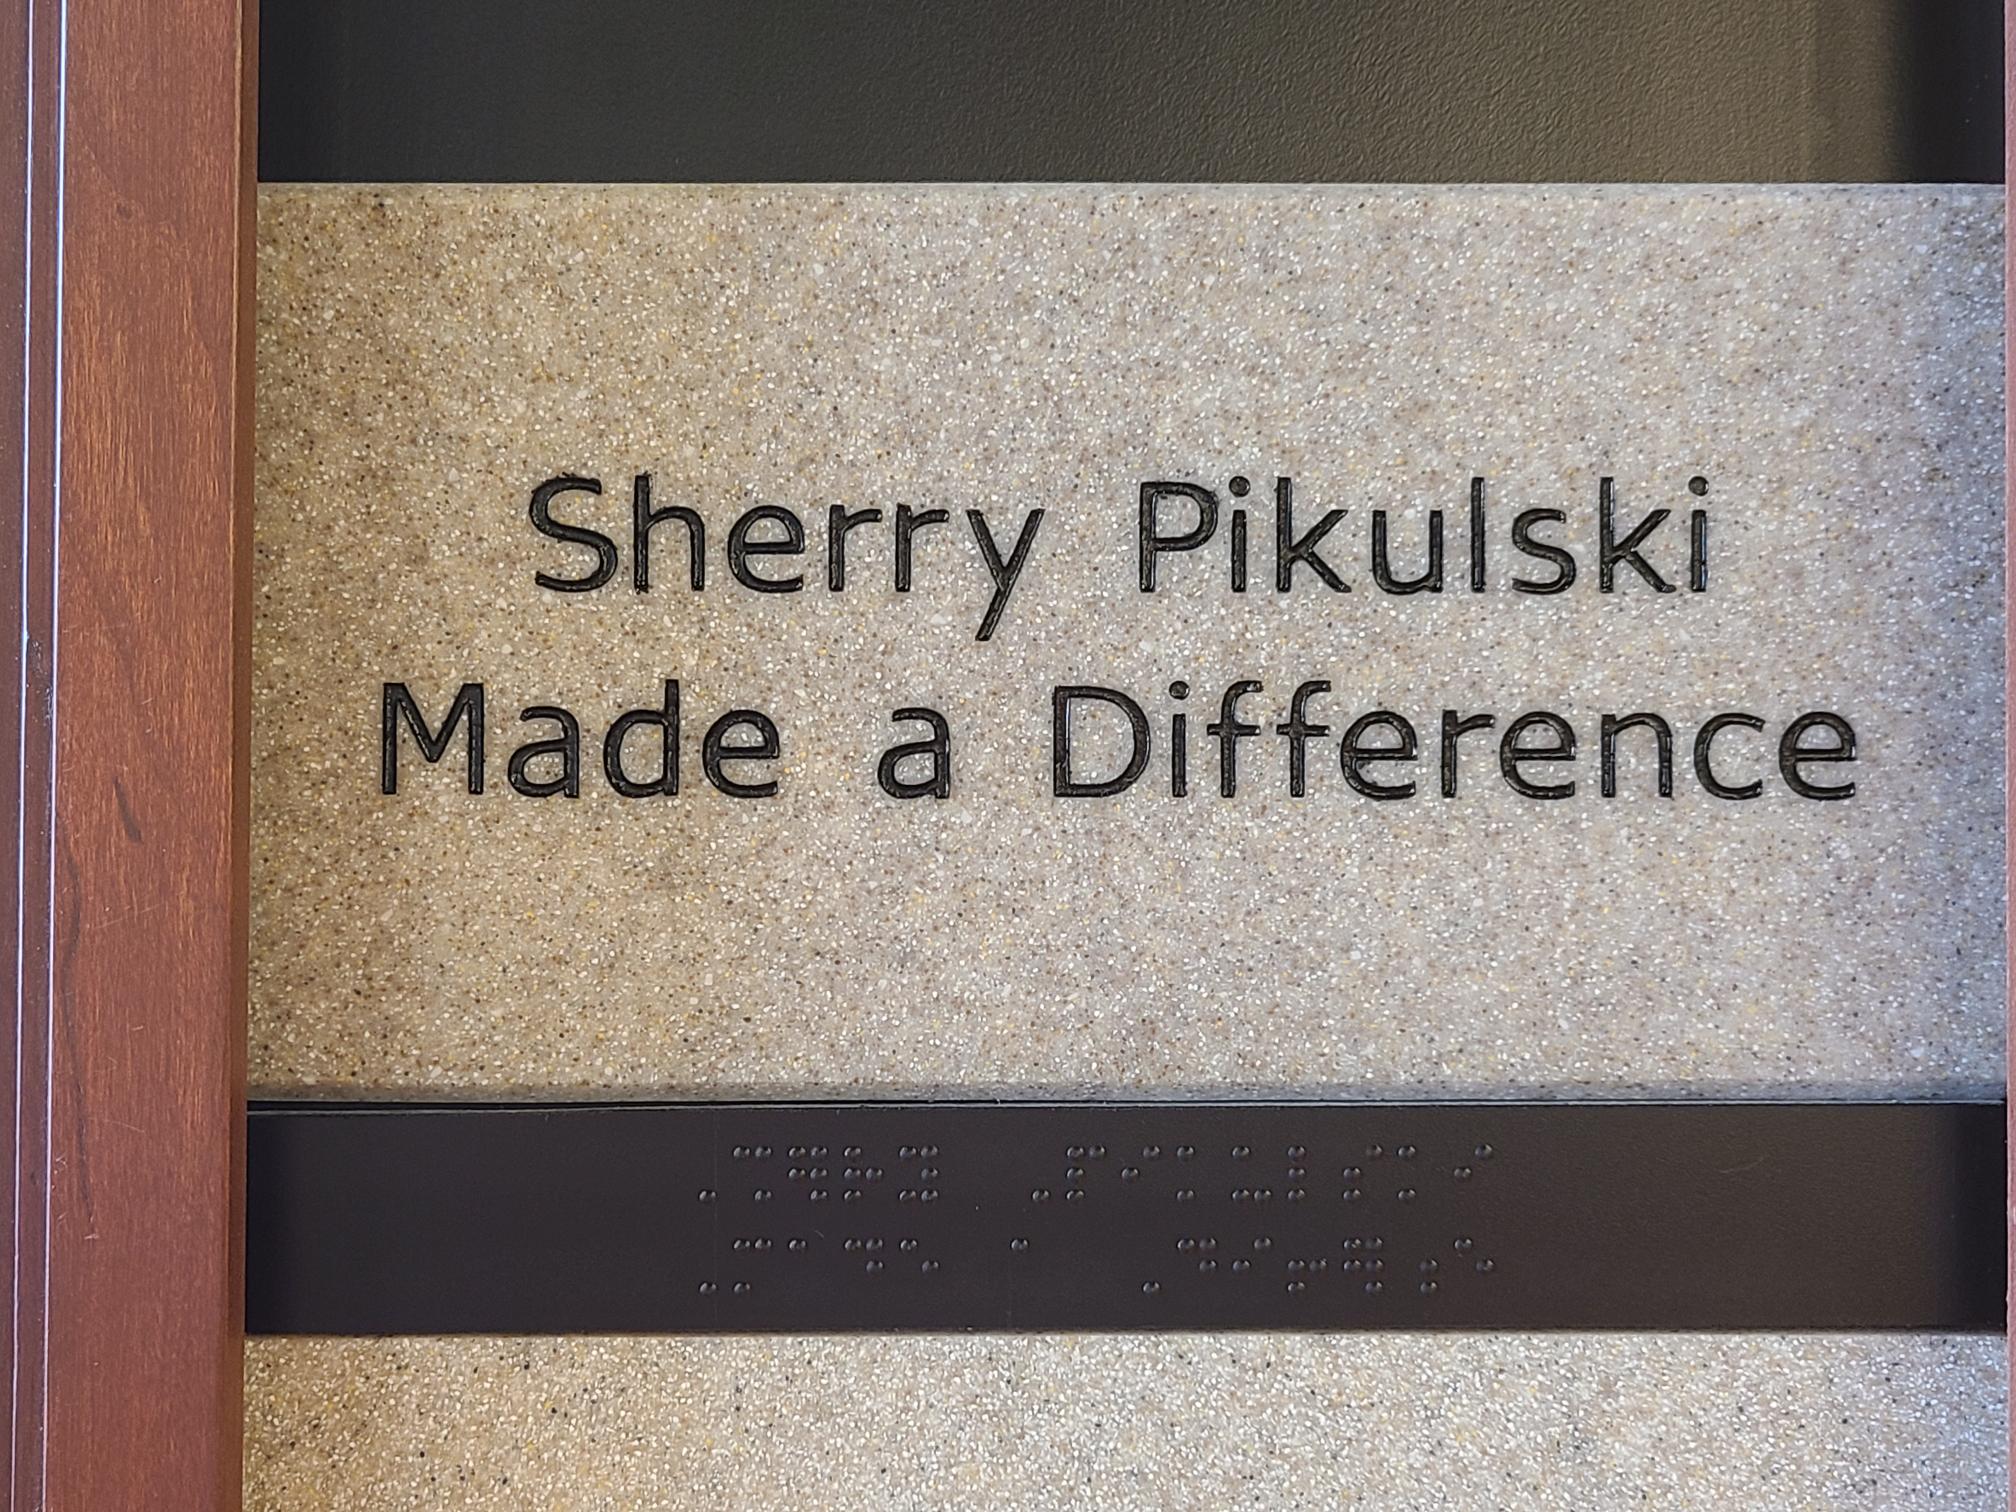 Sherry Pikulski, Made a Difference